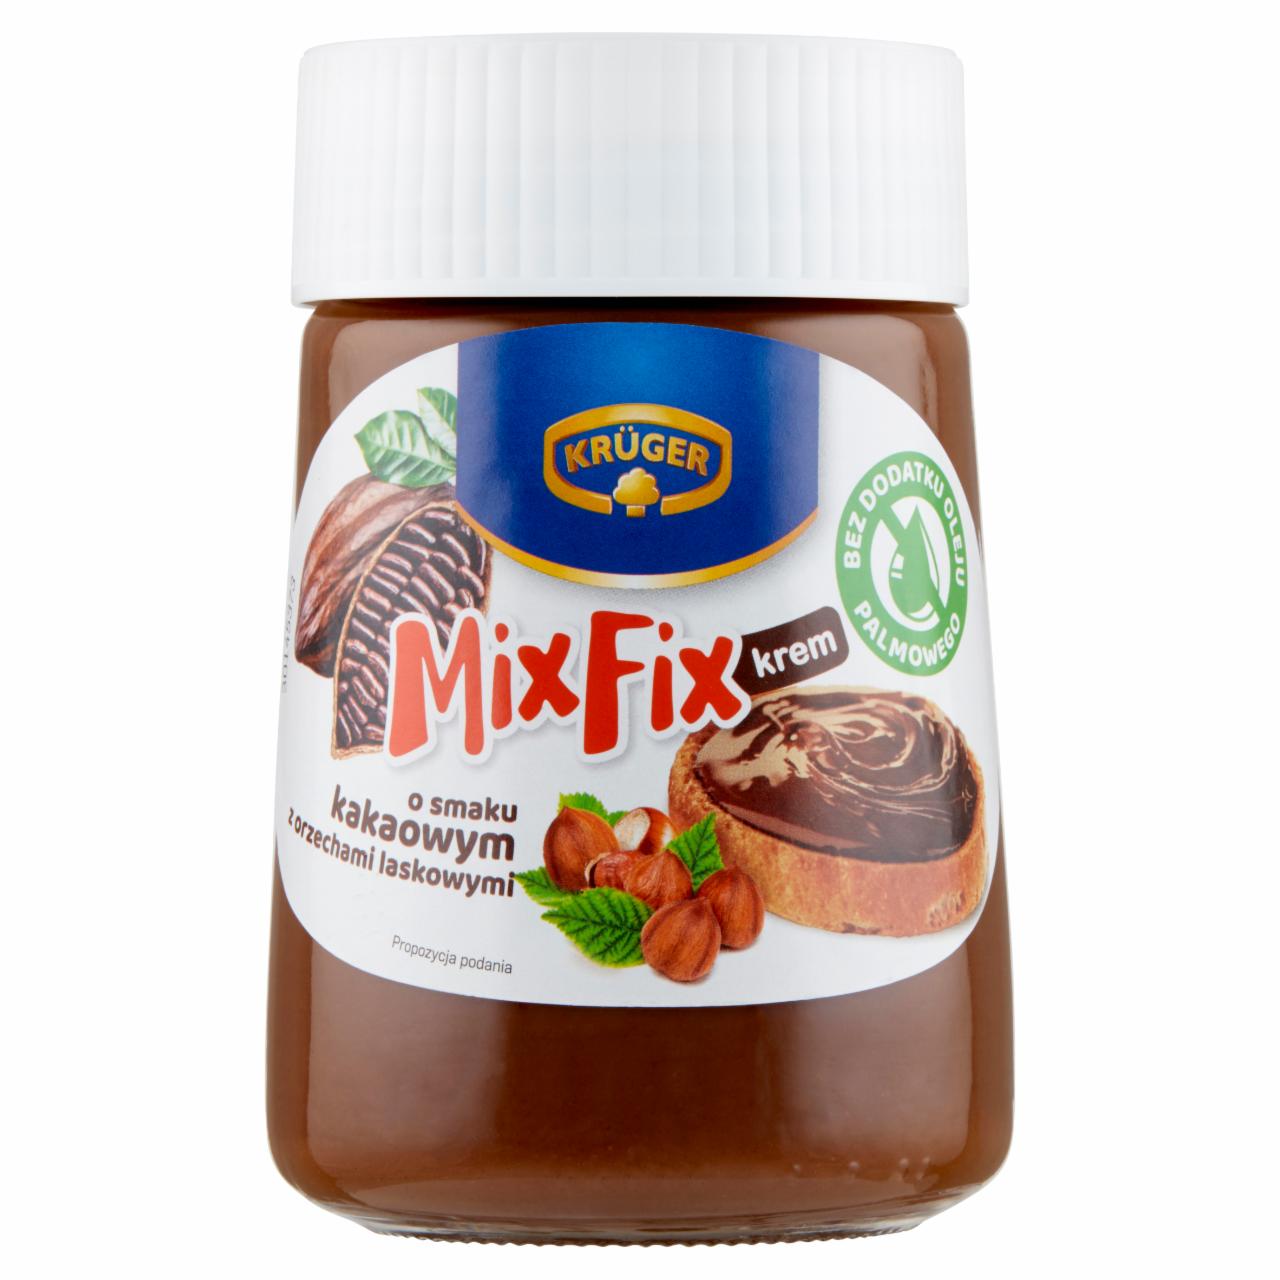 Zdjęcia - Krüger Mix Fix Krem o smaku kakaowym z orzechami laskowymi 380 g